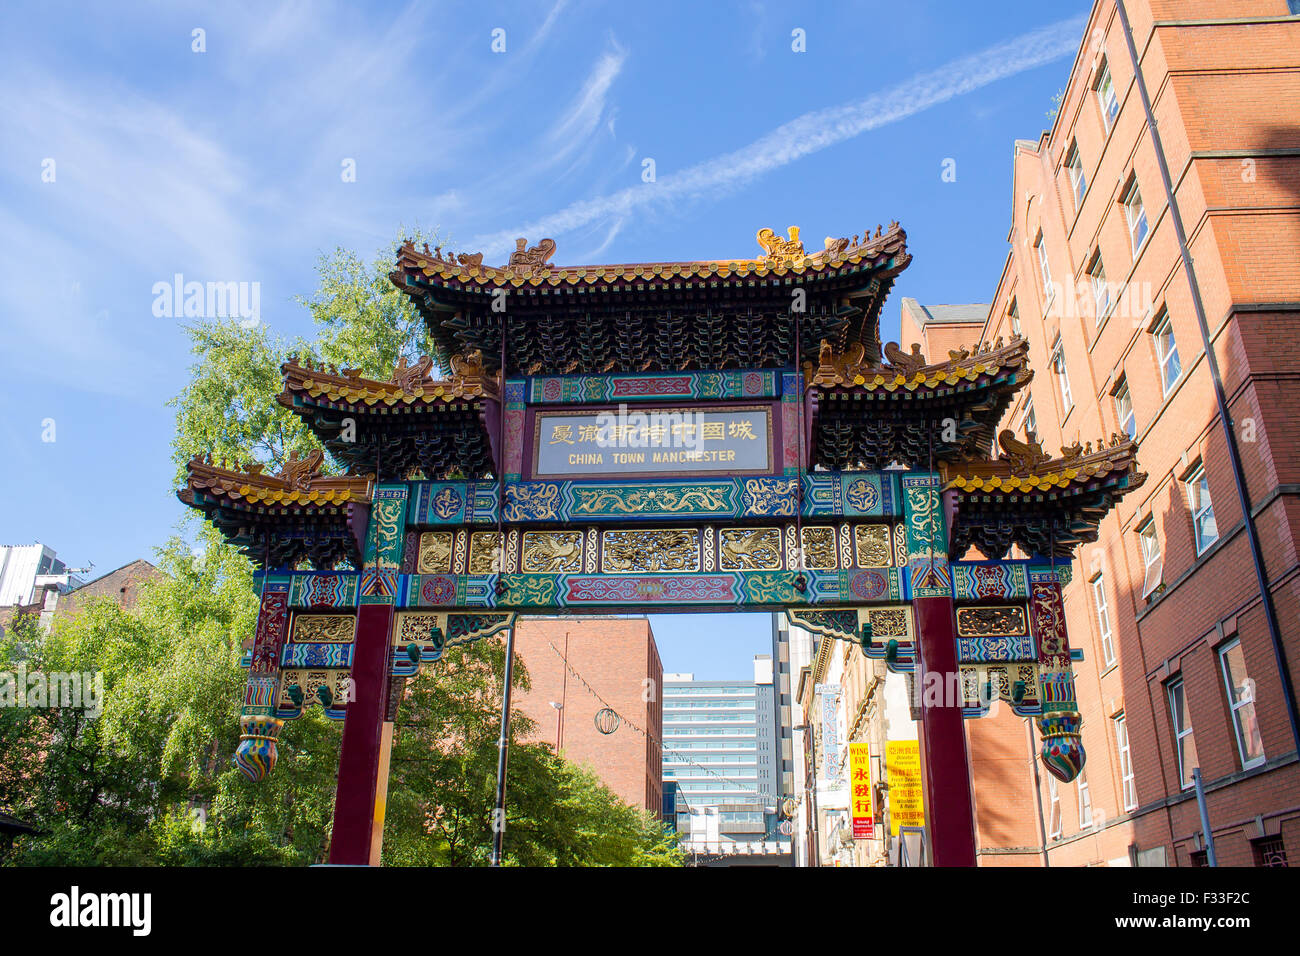 Chinesischen Bogen in Chinatown Bezirk des zentralen Manchester, Vereinigtes Königreich. Stockfoto